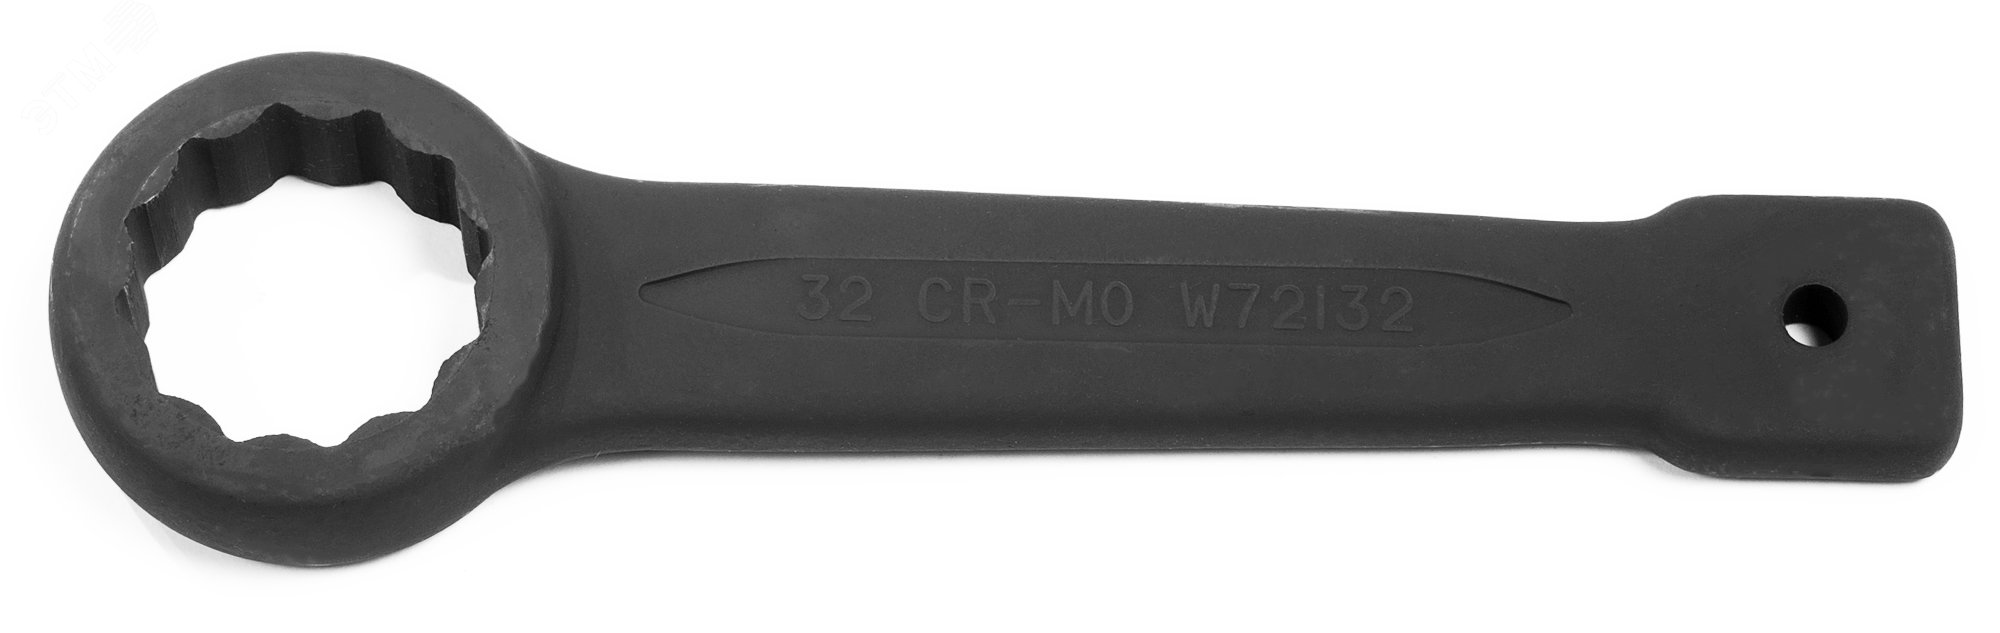 Ключ гаечный накидной ударный, 32 мм W72132 Jonnesway